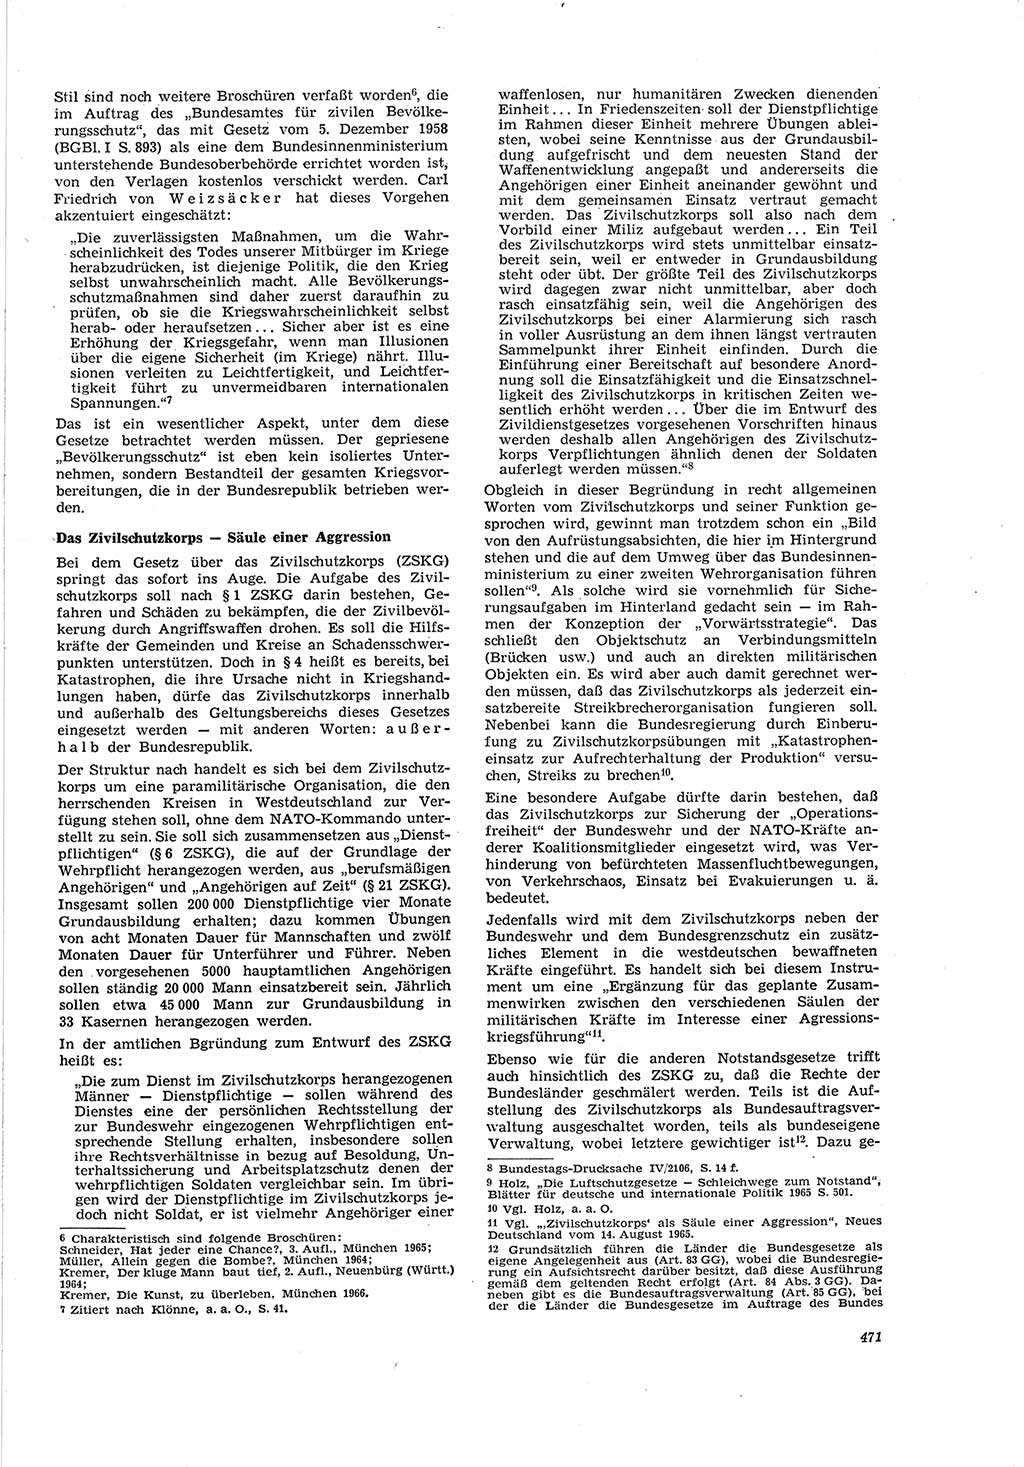 Neue Justiz (NJ), Zeitschrift für Recht und Rechtswissenschaft [Deutsche Demokratische Republik (DDR)], 20. Jahrgang 1966, Seite 471 (NJ DDR 1966, S. 471)